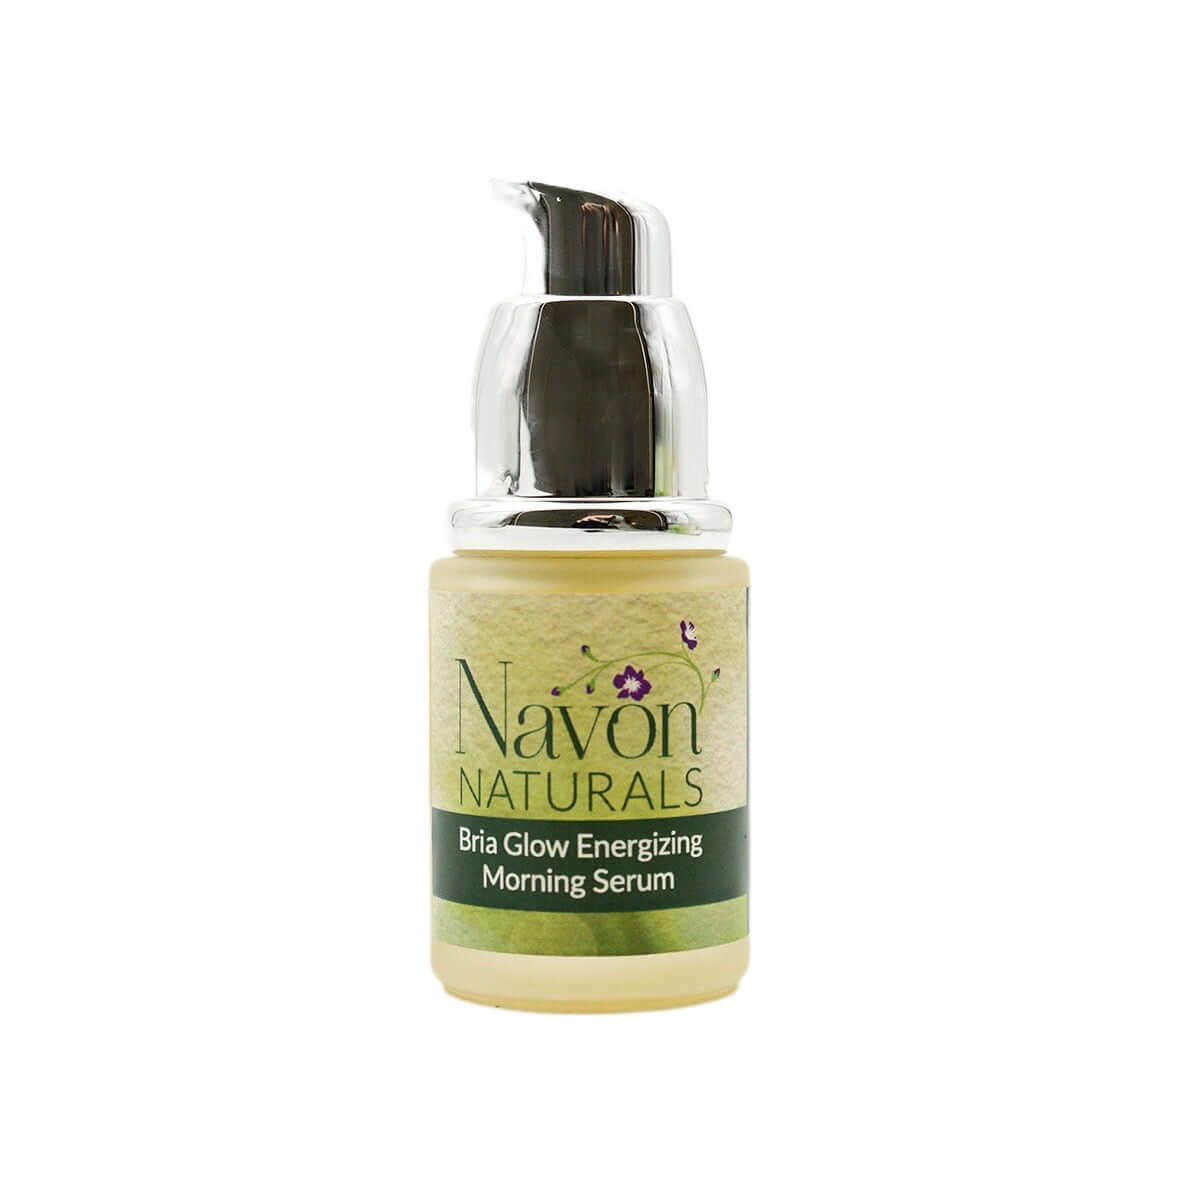 Bria Glow Energizing Morning Serum - Navon Naturals Skincare